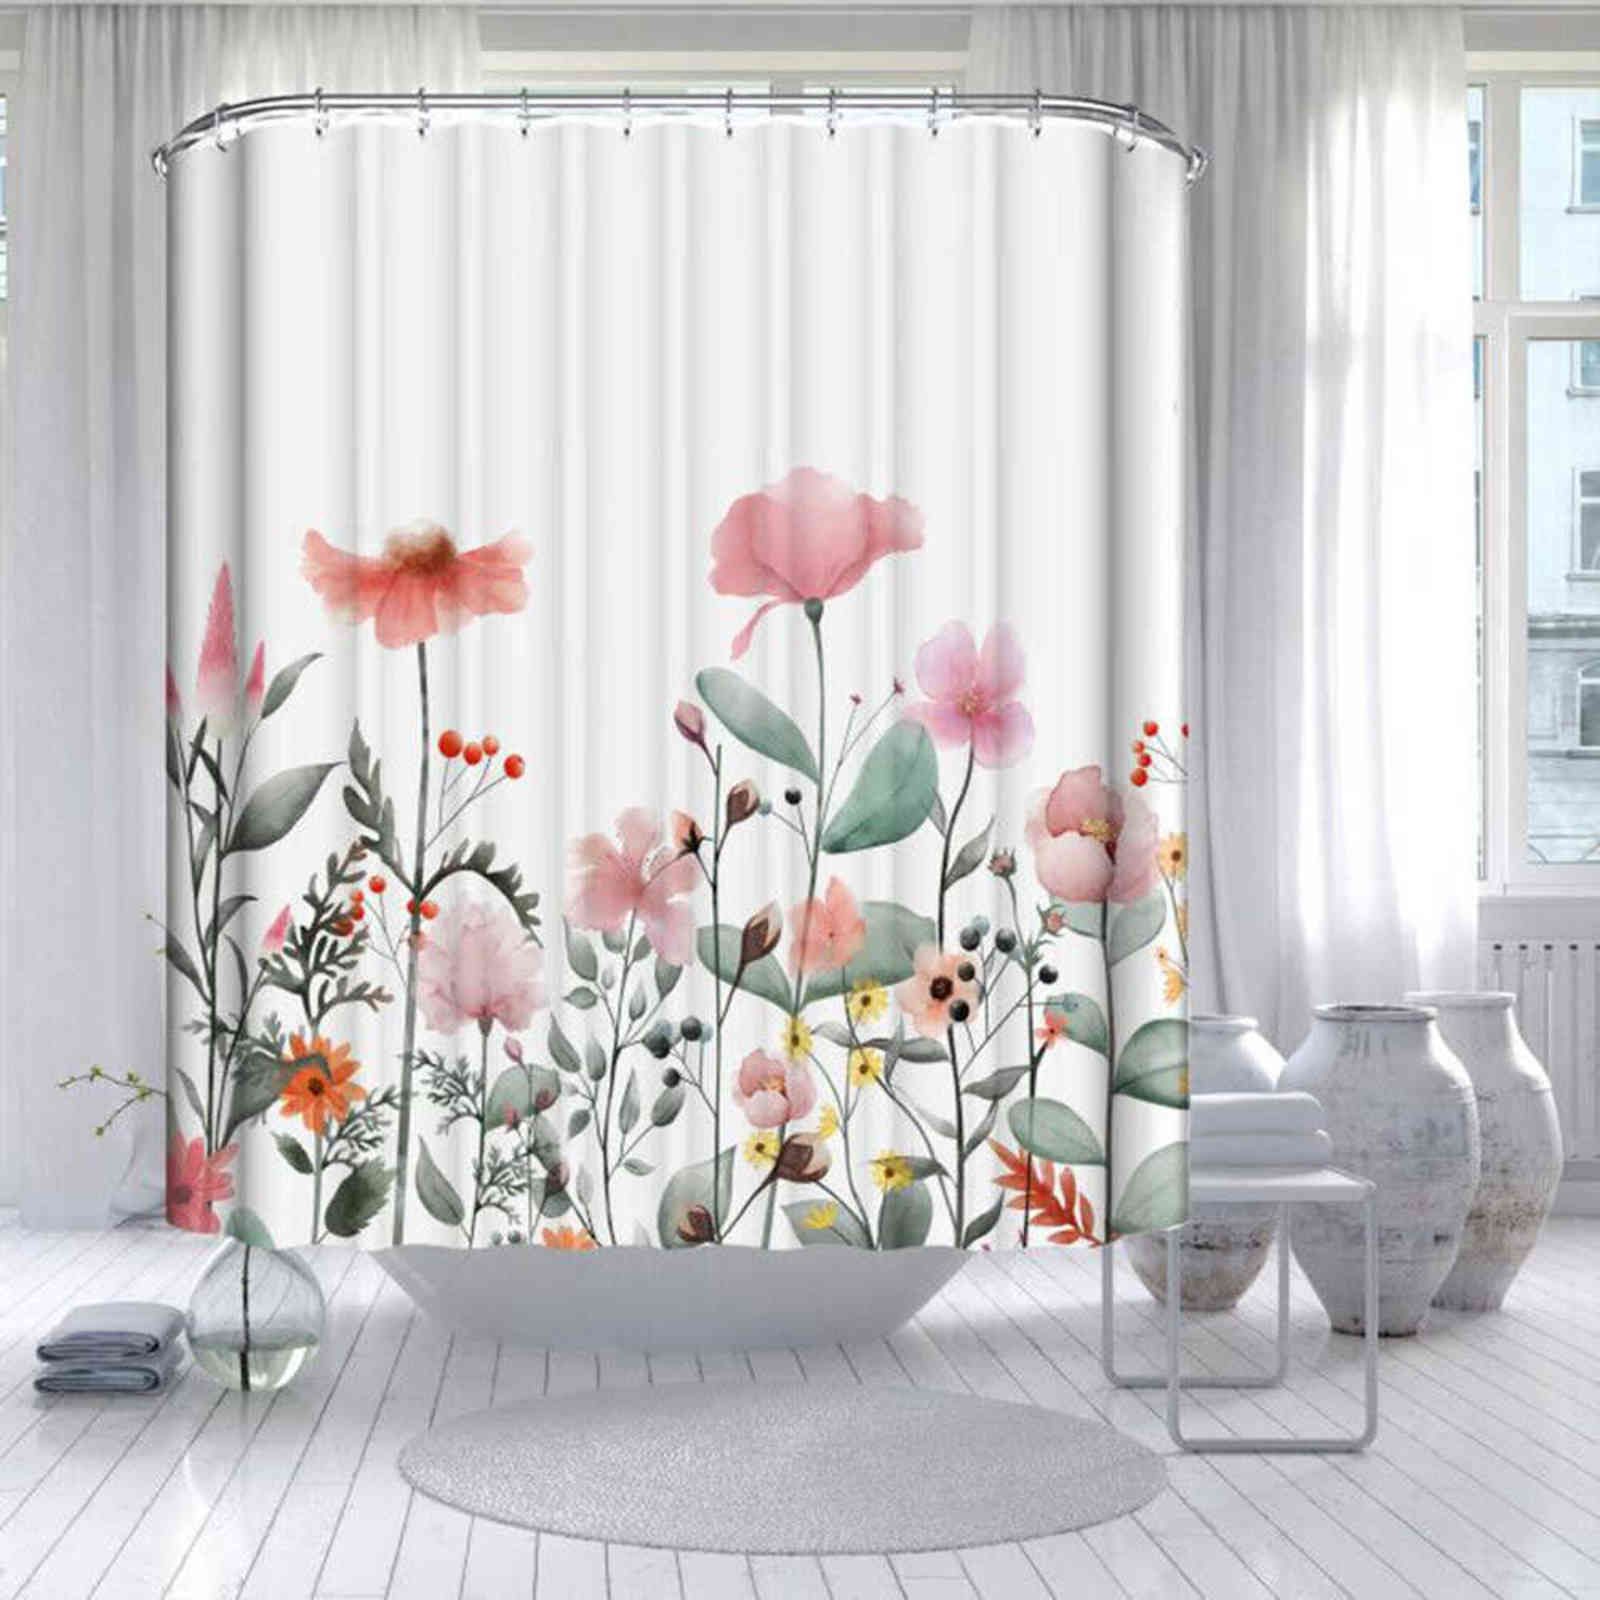 Shower Curtain 3-W180xh200cm